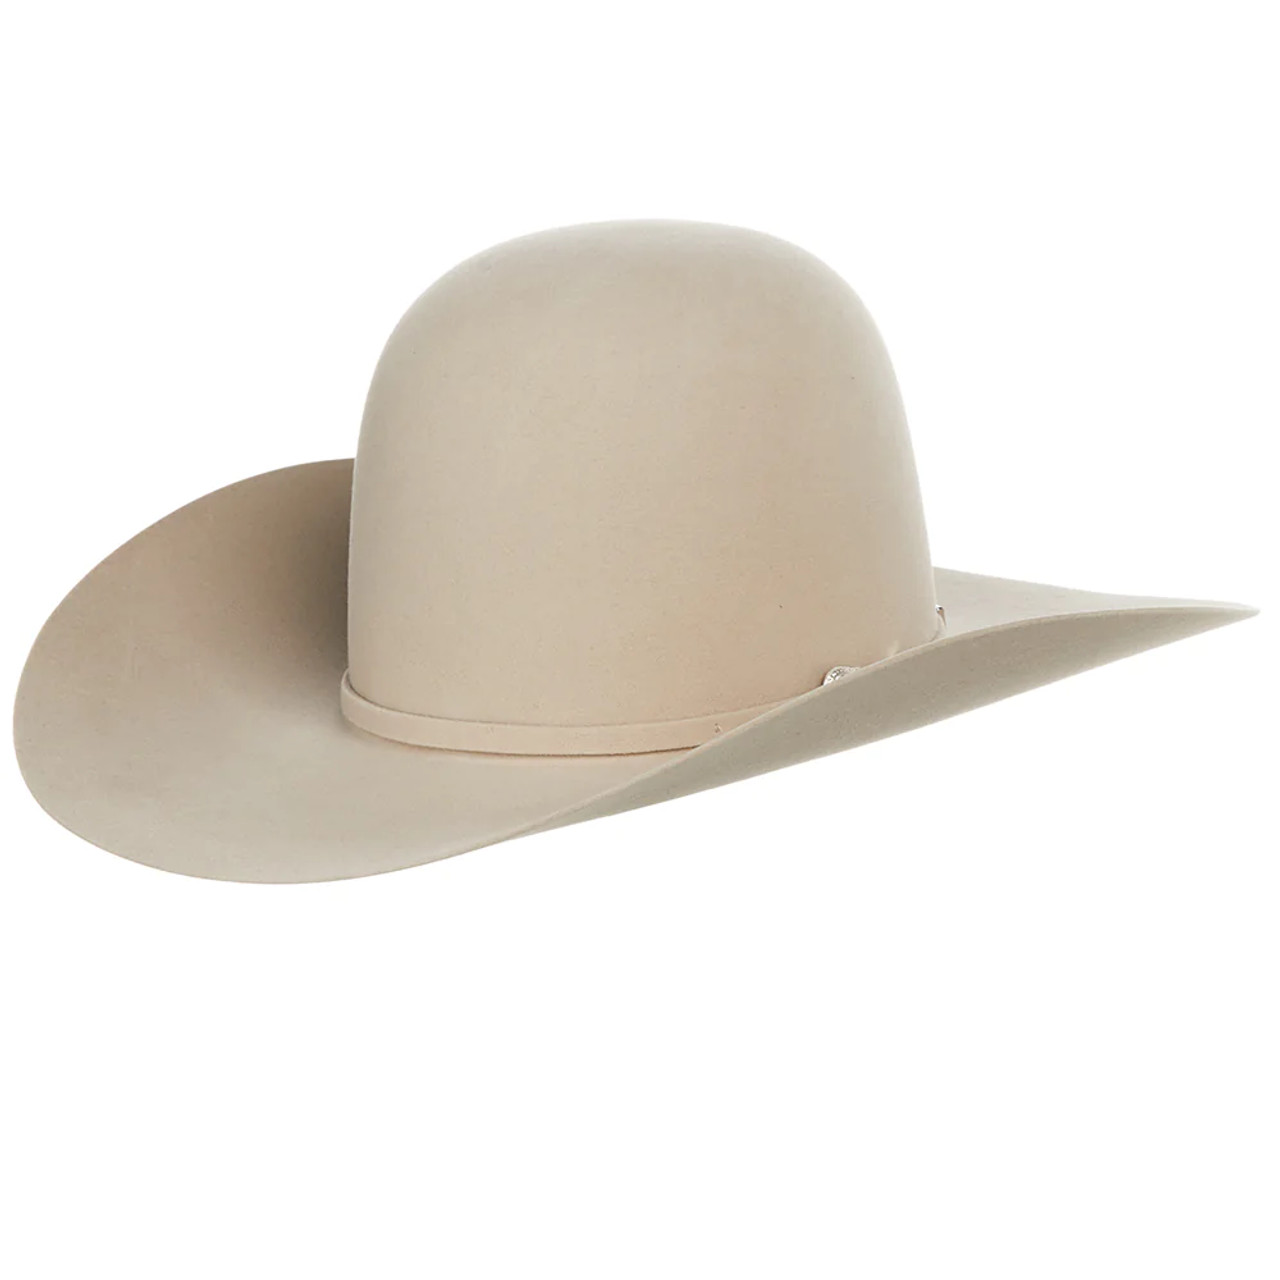 American Hat Co. - 7X Steel Felt Cowboy Hat - 4 1/2 Brim